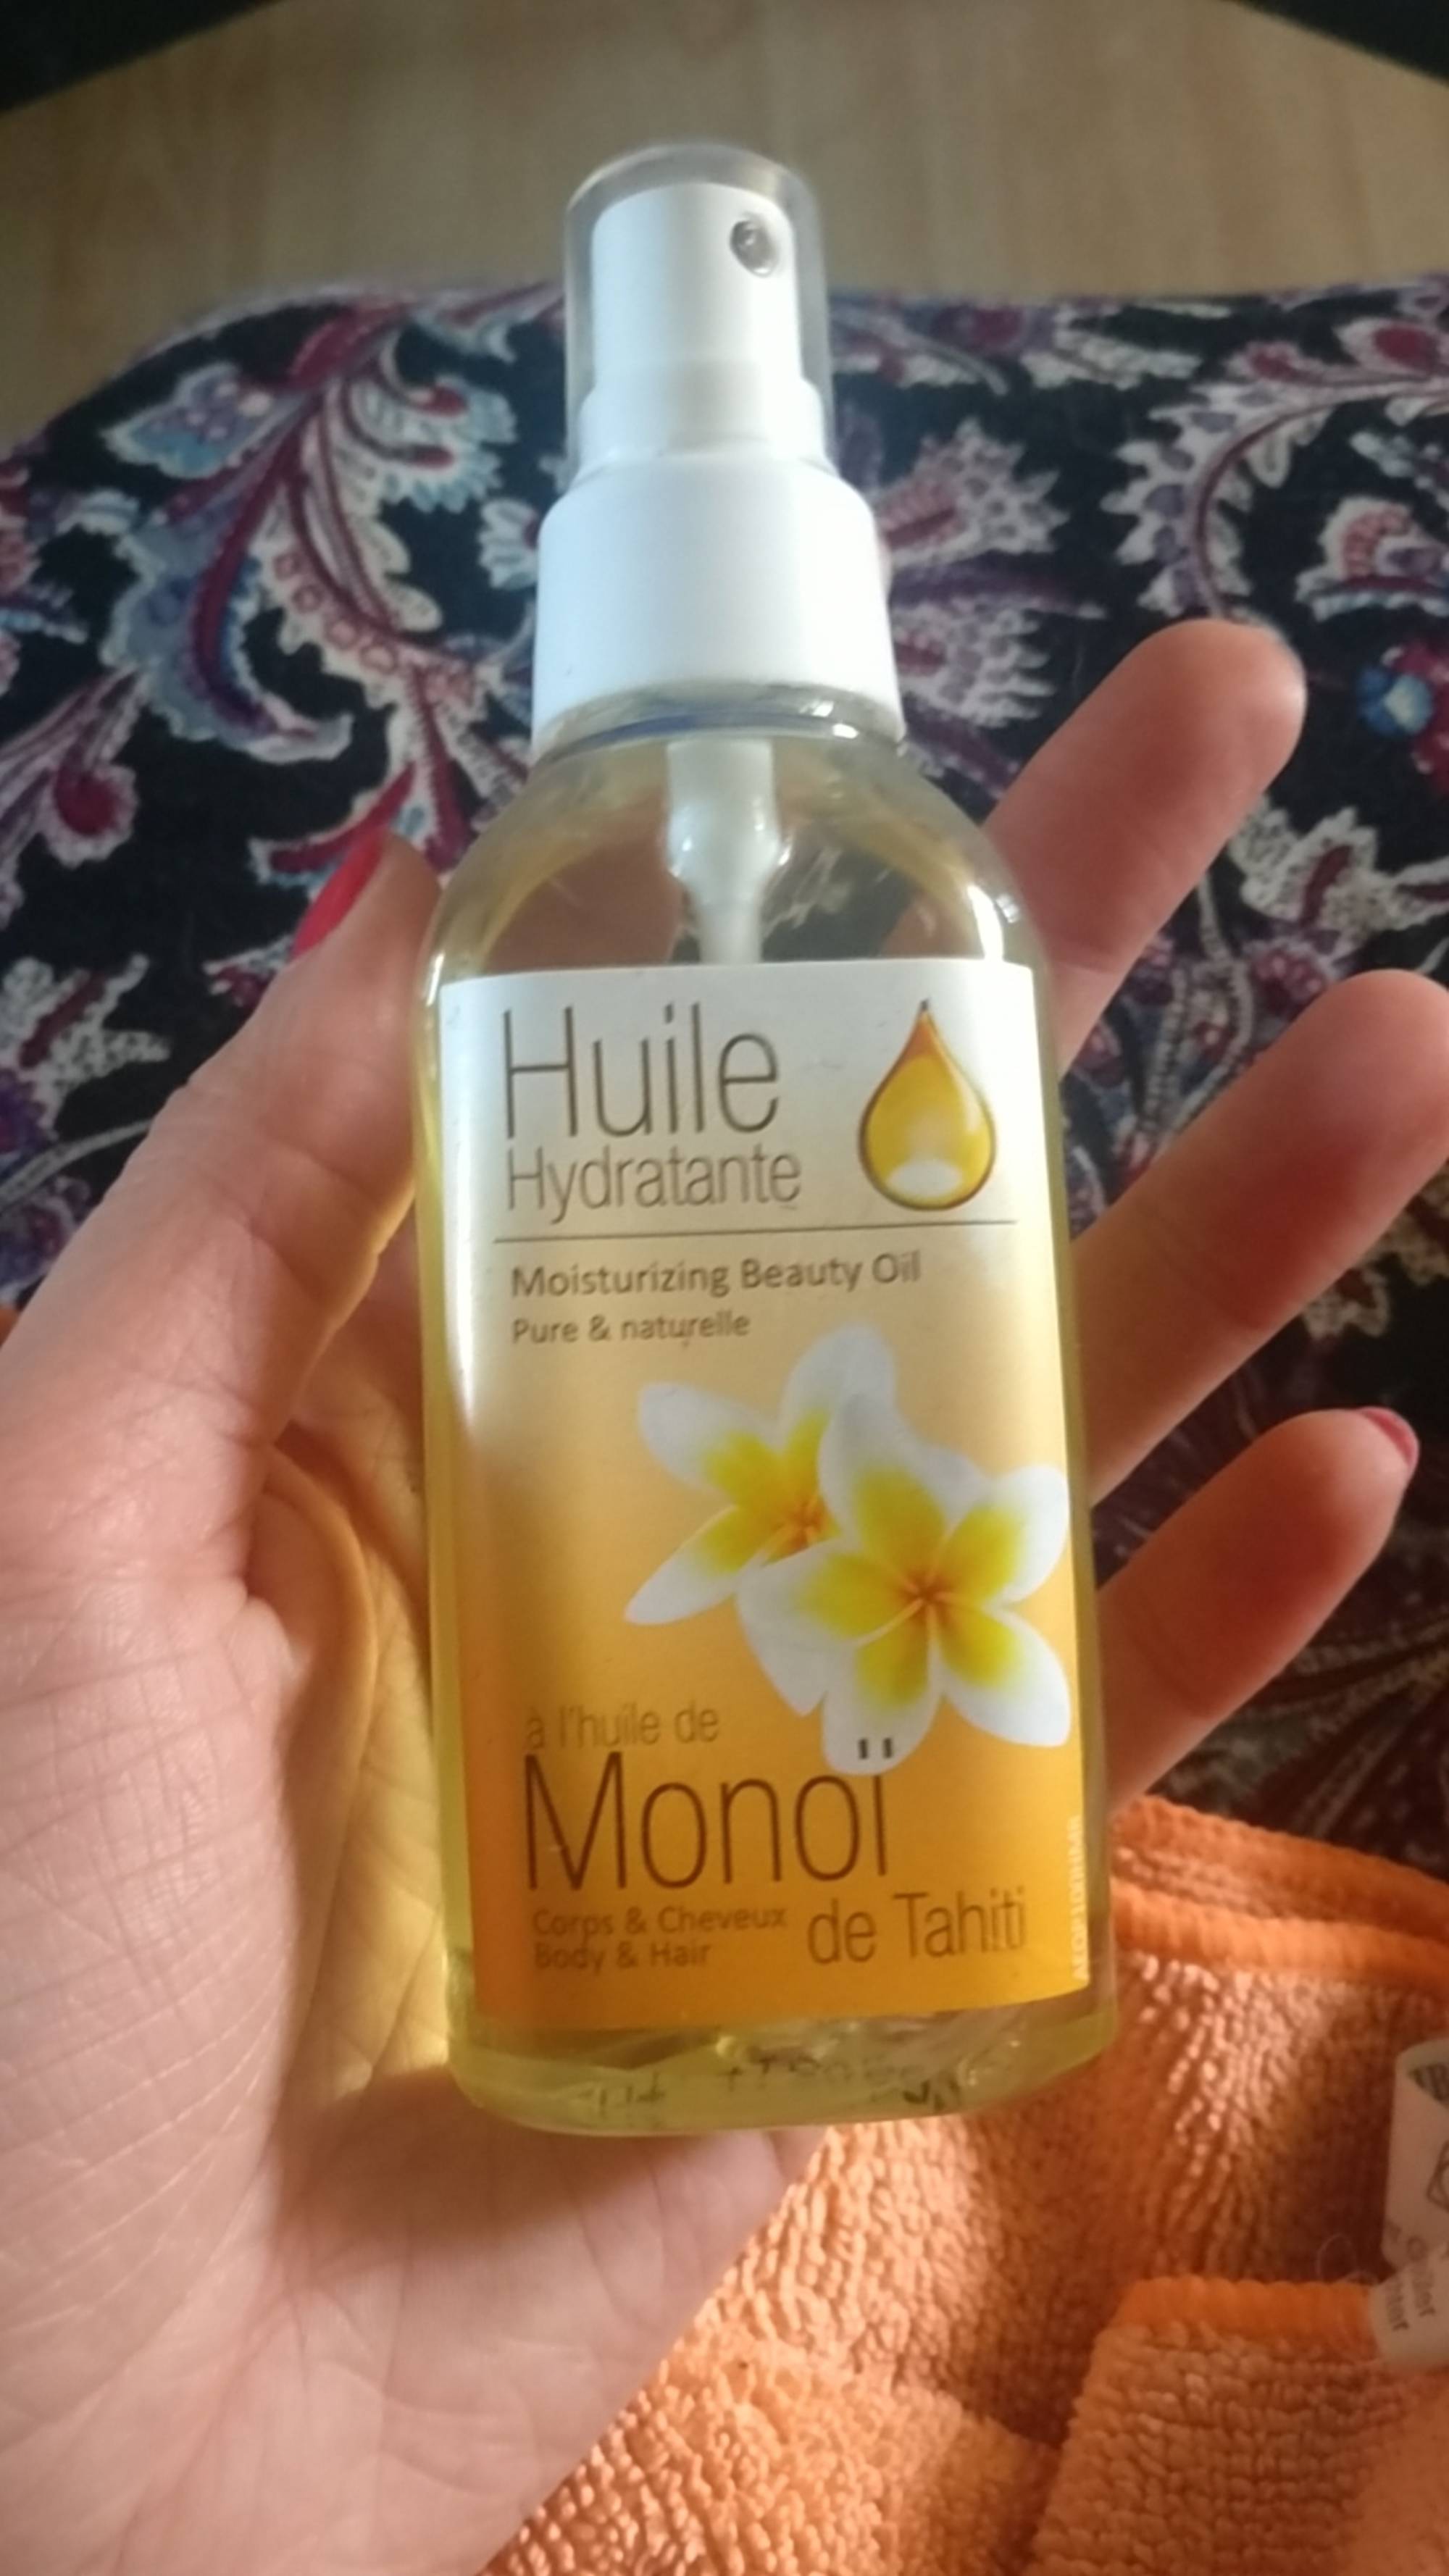 PRÉPHAR - Huile hydratante à l'huile de monoï de tahiti